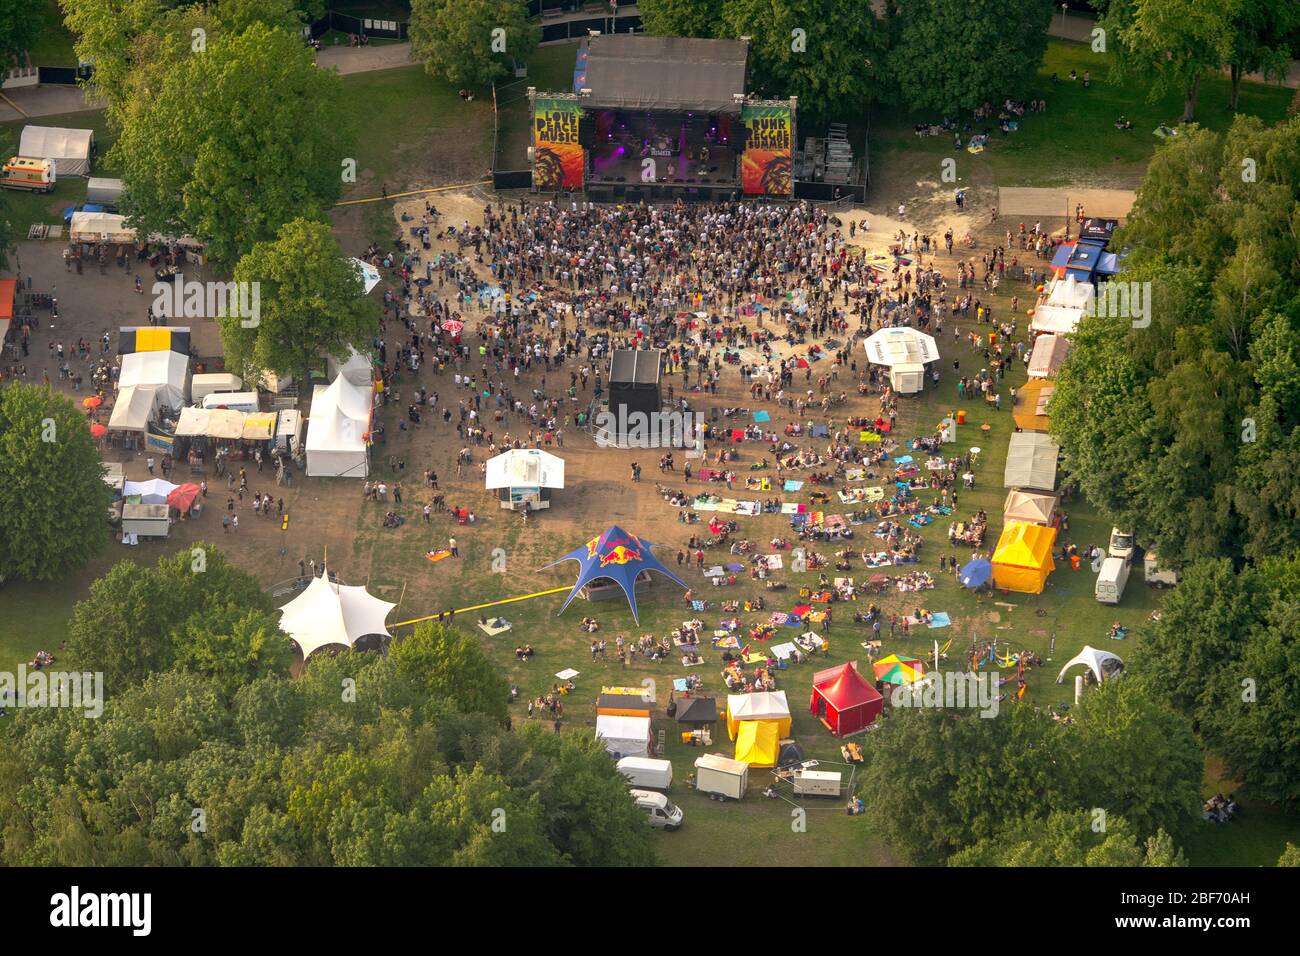 , concert de musique sur la scène extérieure des Reggae festival im Revierpark Wischlingen à Dortmund, 26.05.2016, vue aérienne, Allemagne, Rhénanie-du-Nord-Westphalie, Ruhr Area, Dortmund Banque D'Images